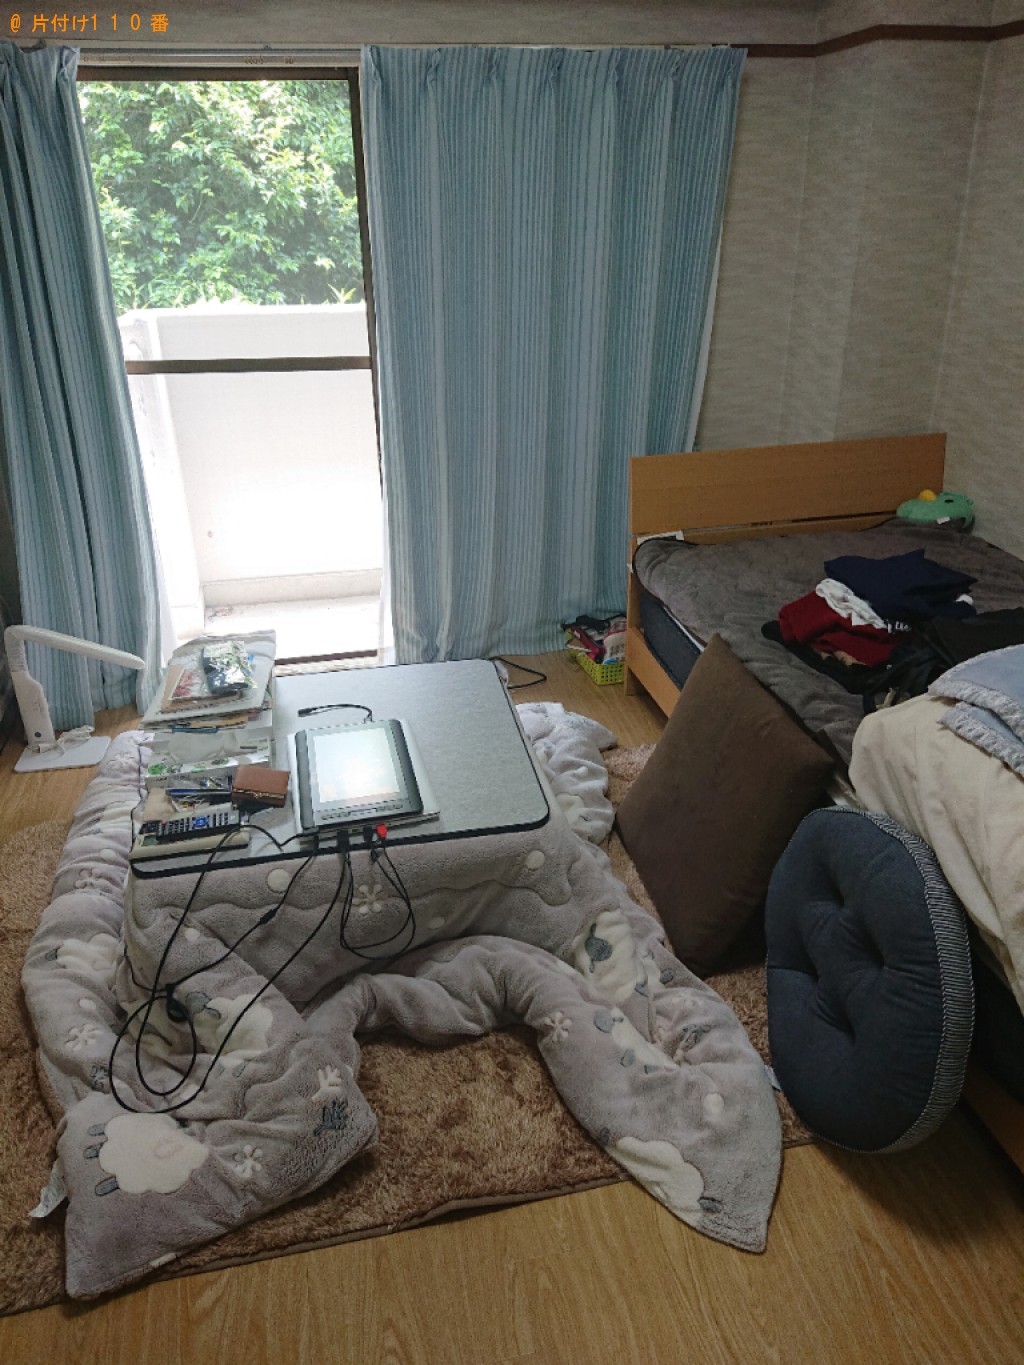 【長岡京市】部屋の整理整頓と掃除、掃除で出た一般ごみの回収